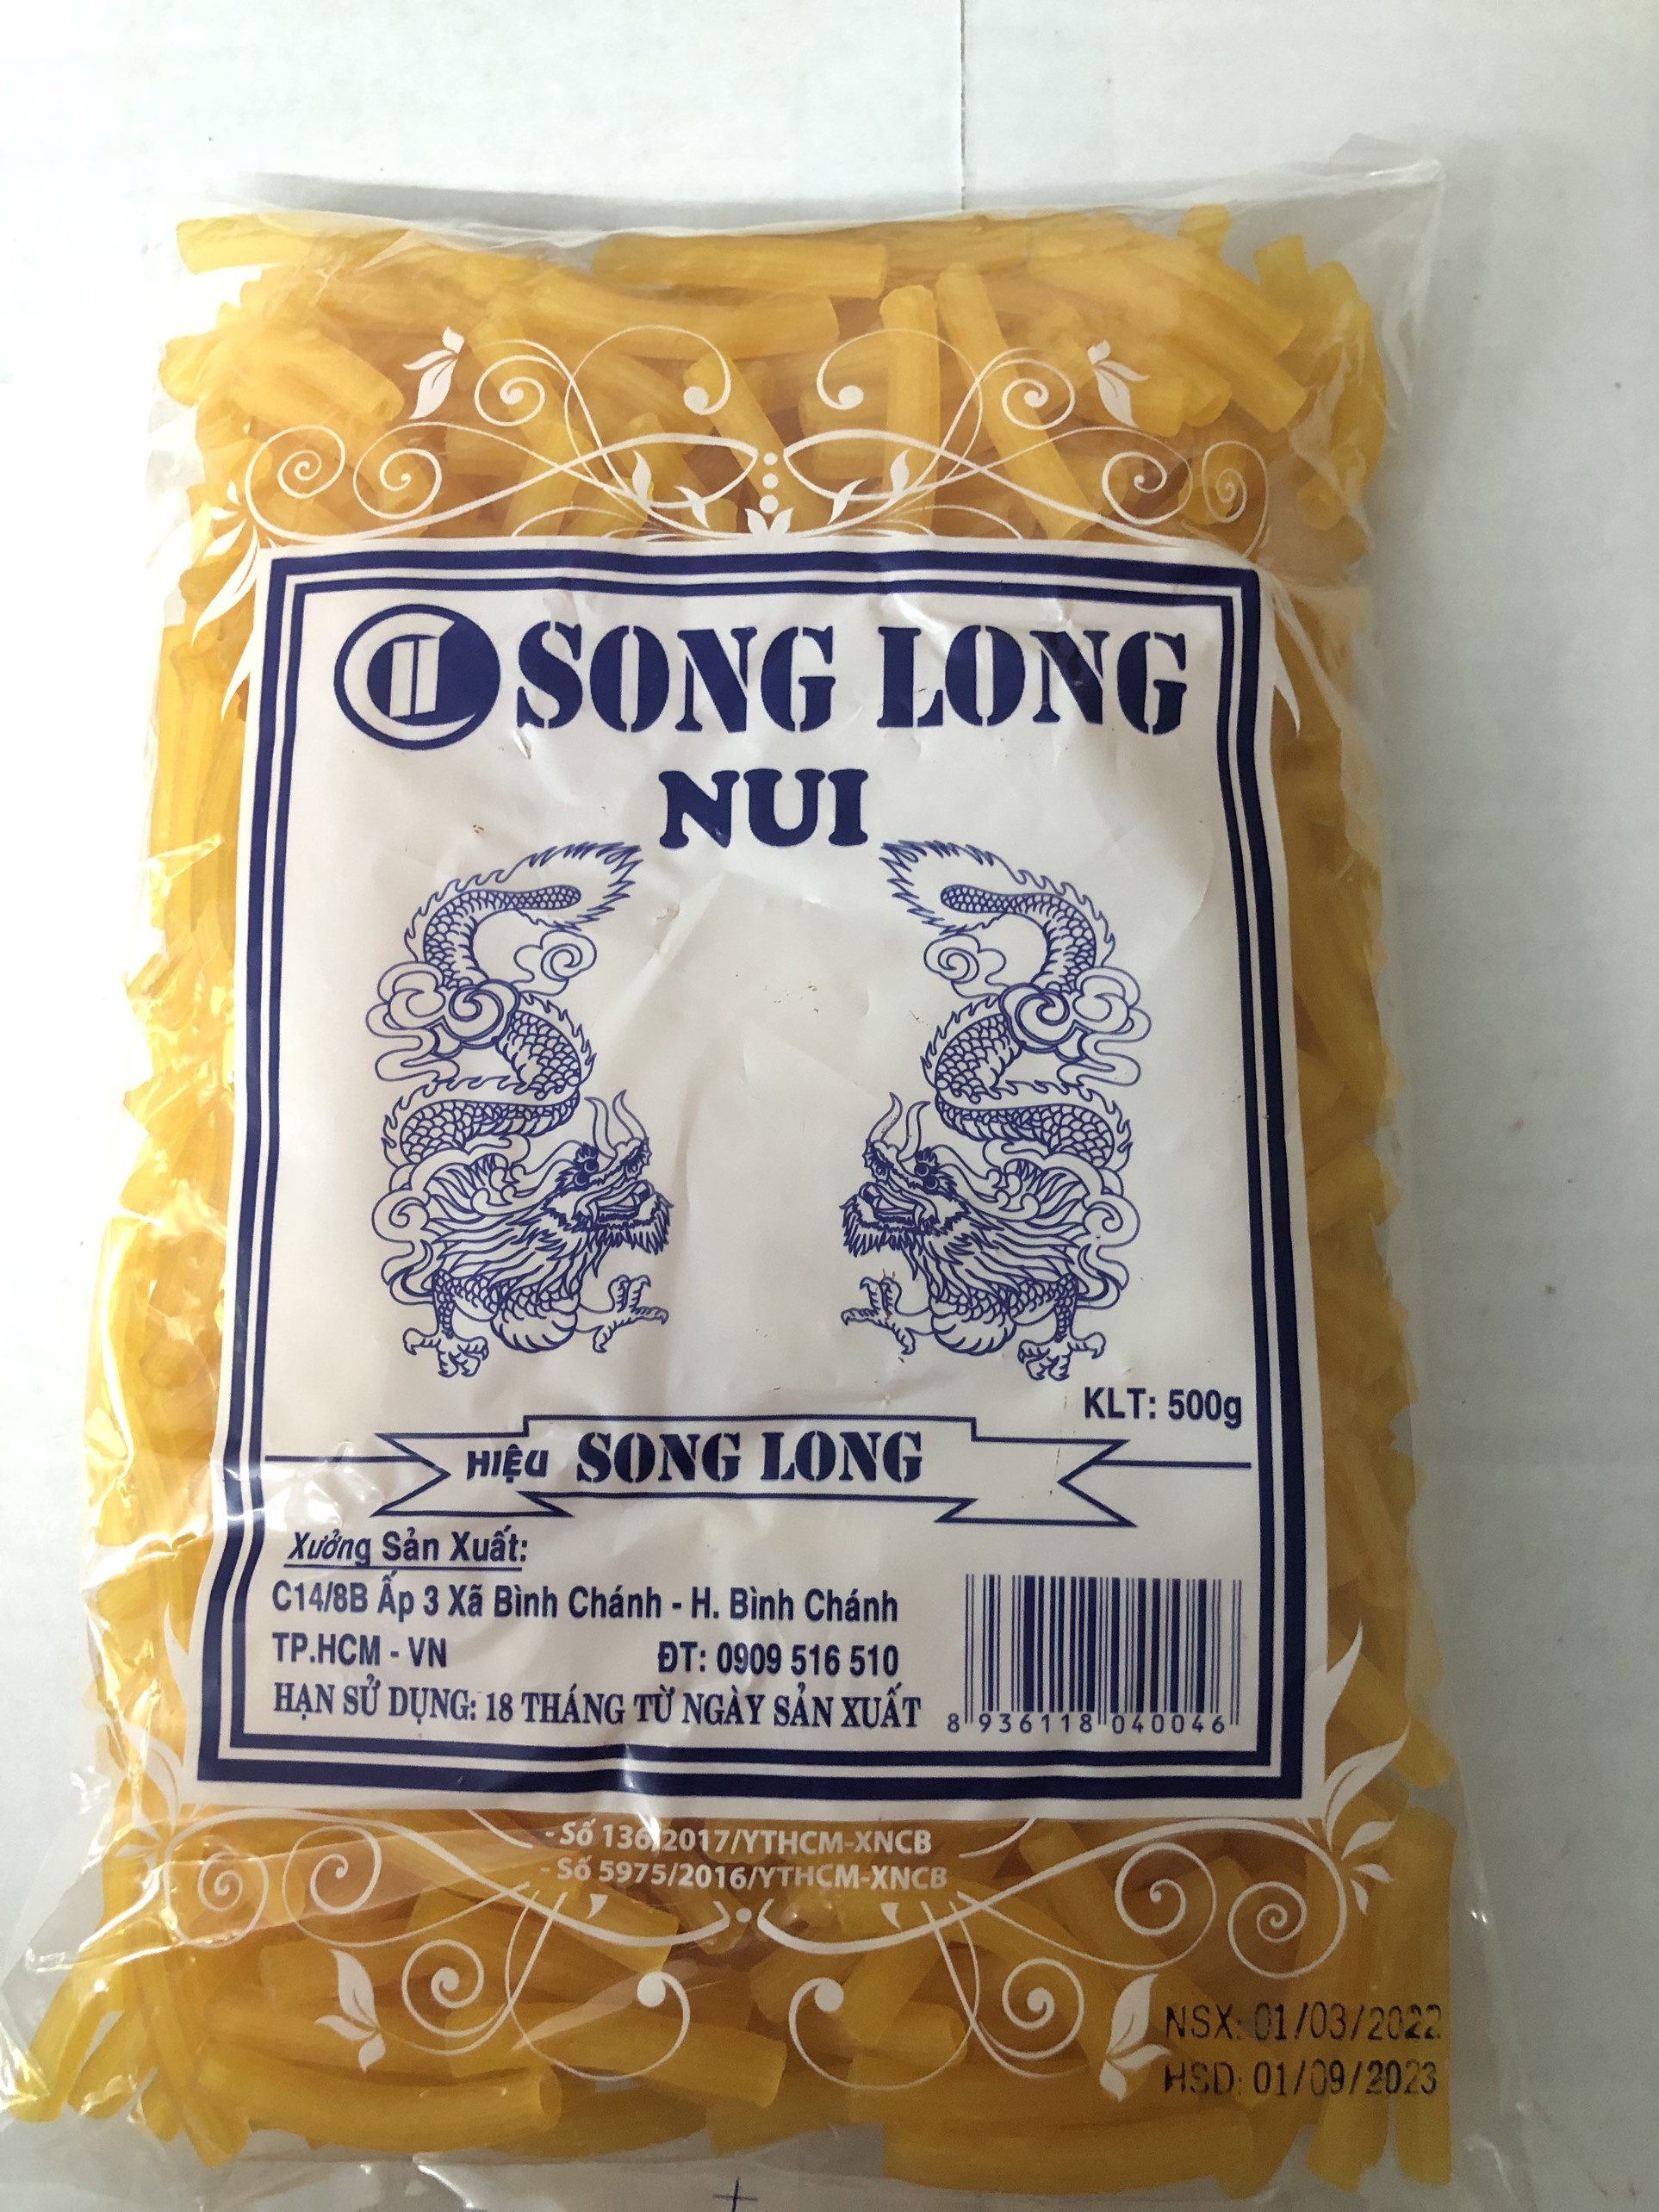 Nui Song Long ống dài, con sò 500g